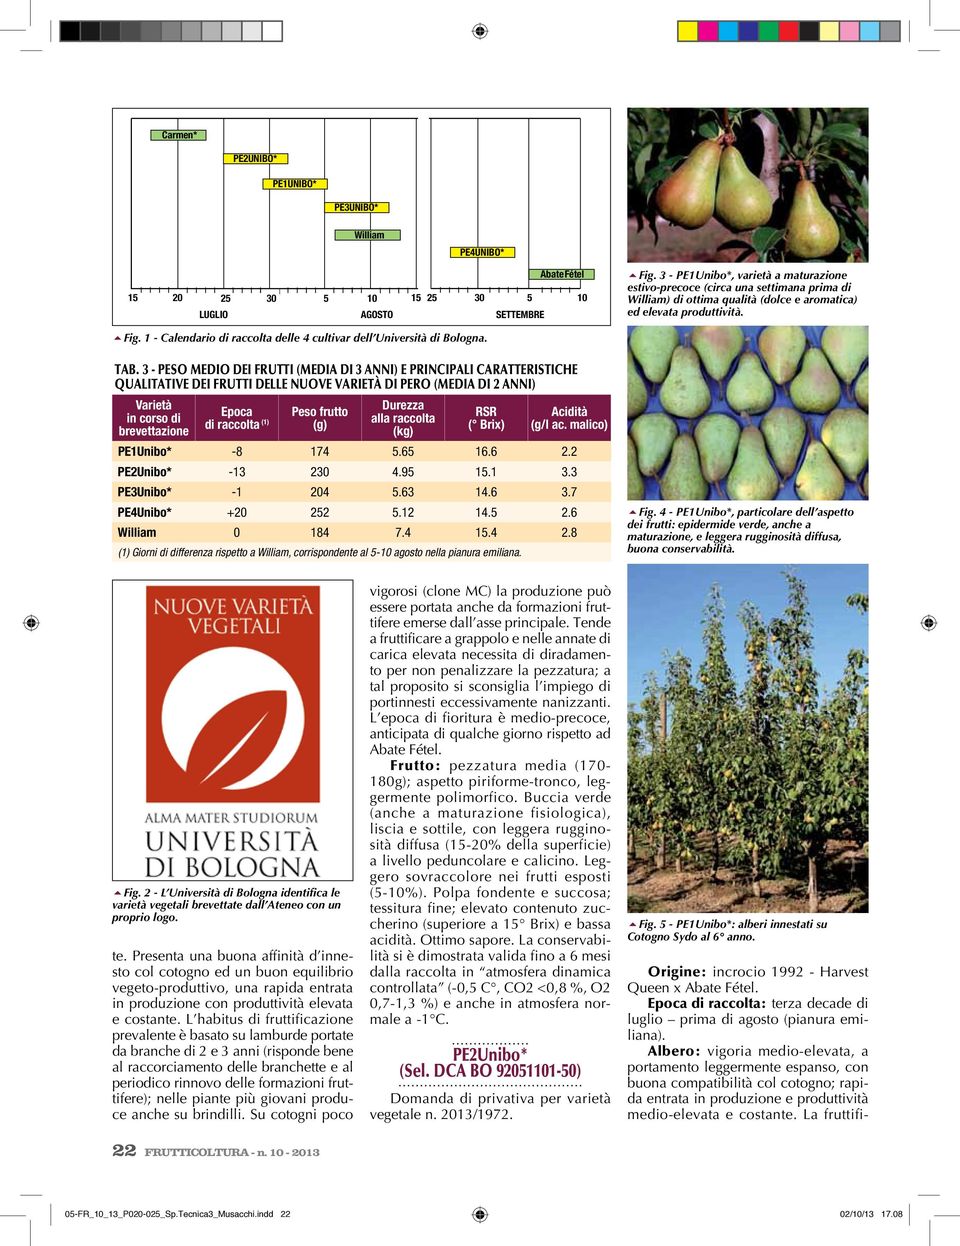 1 - Calendario di raccolta delle 4 cultivar dell Università di Bologna. Tab.